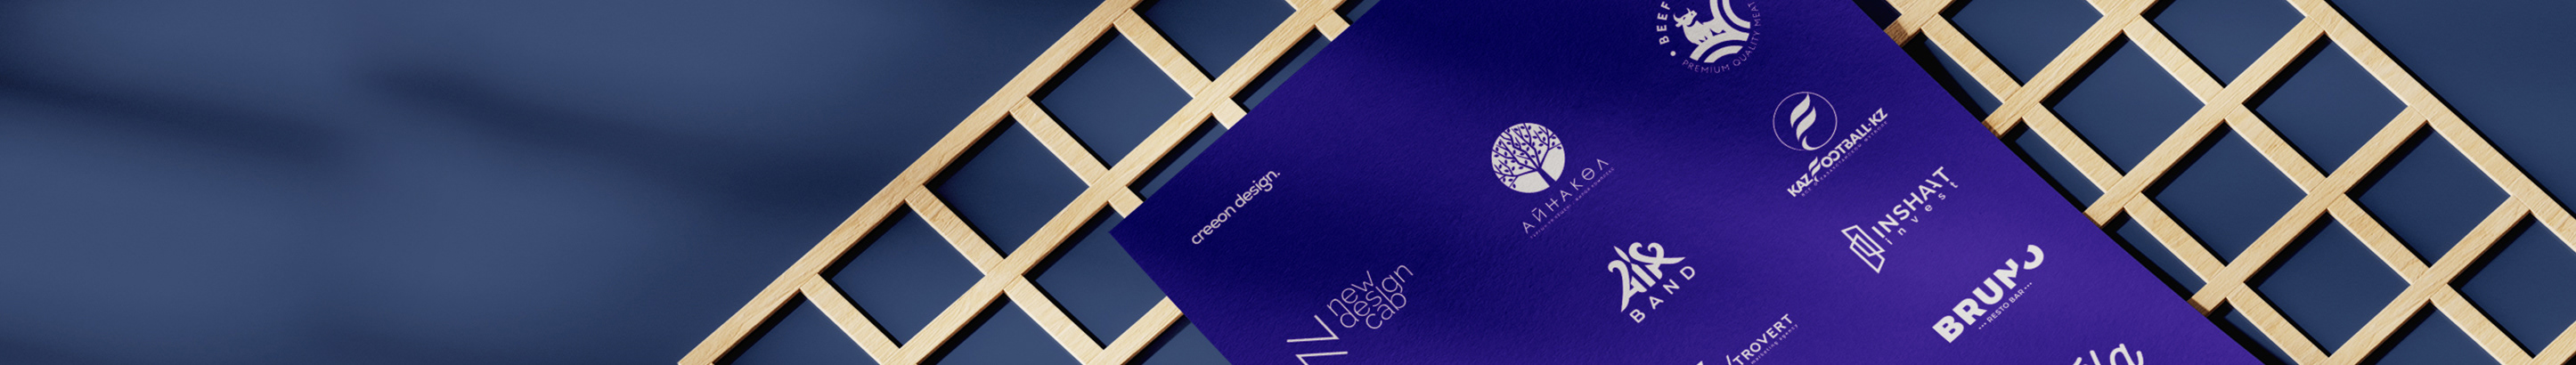 Creeon Design studio's profile banner